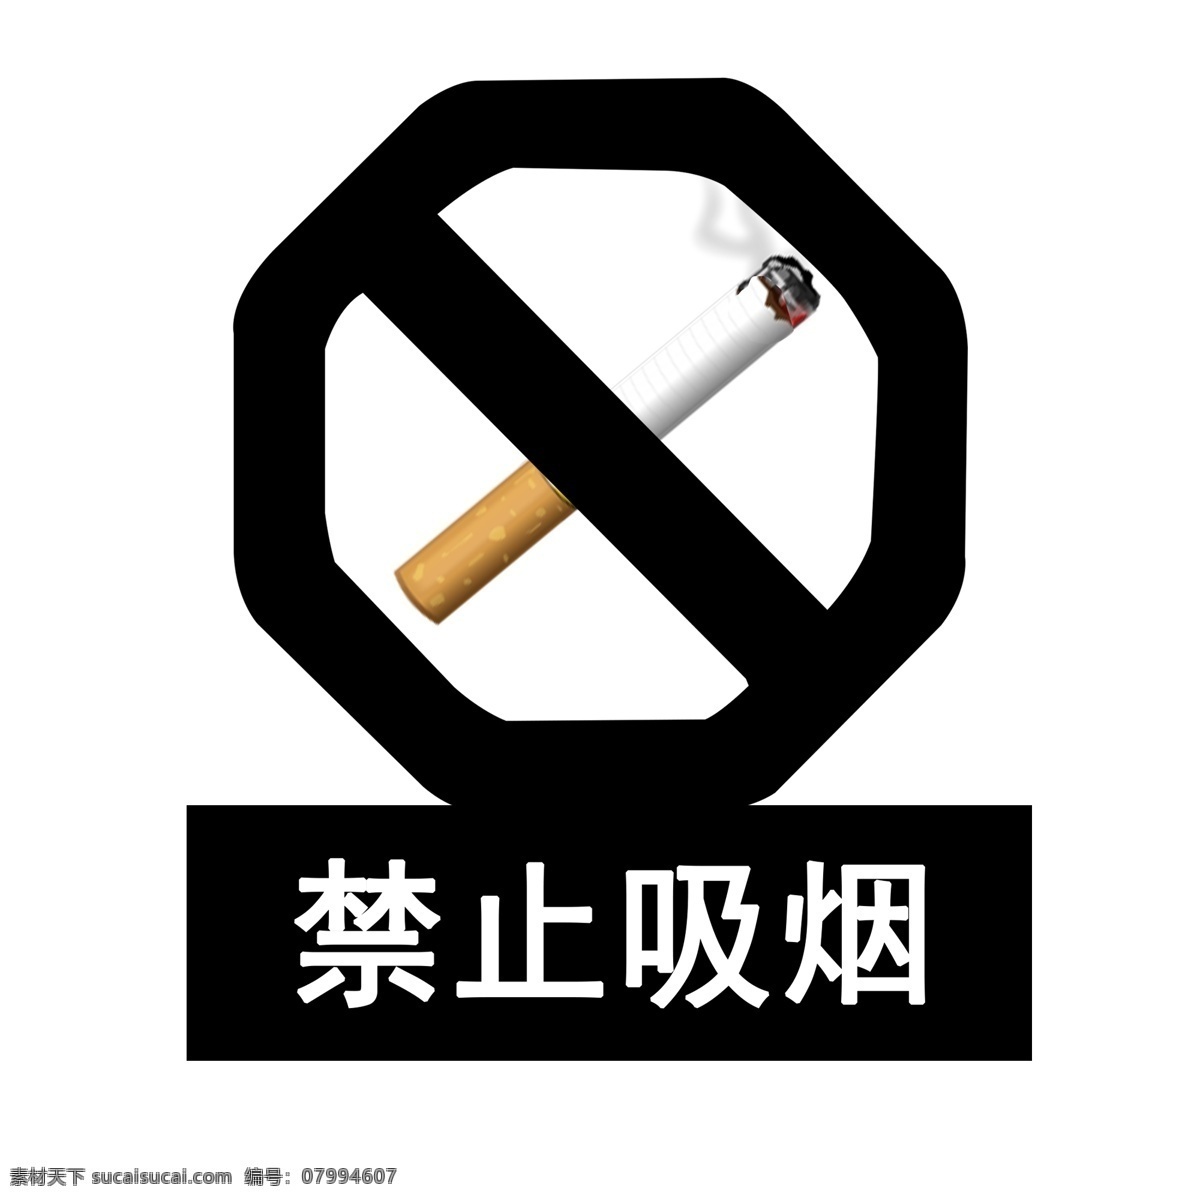 写实 禁止 吸烟 图标素材 元素 熄灭烟头 禁止吸烟 禁止标志 禁止火源 请勿吸烟 戒烟 抽烟 烟头 烟民